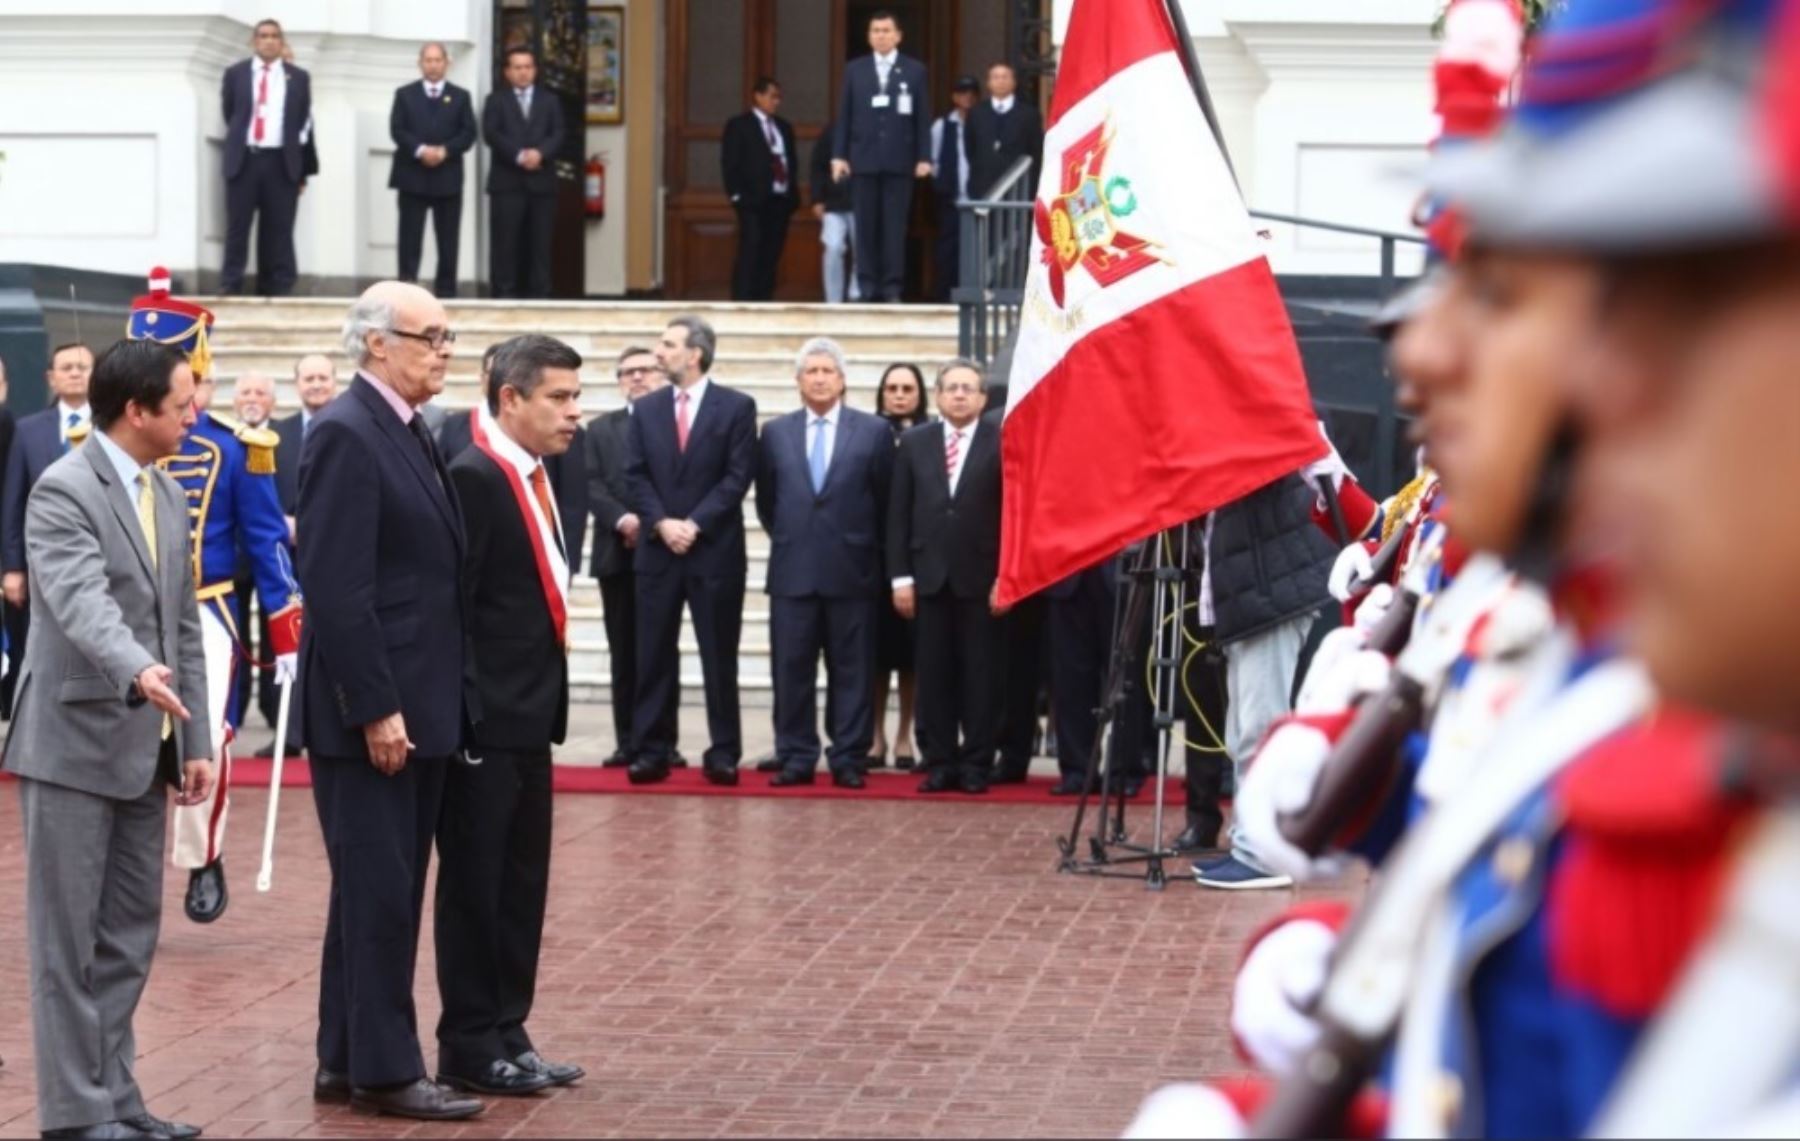 Canciller Ricardo Luna participa en ceremonia por el Día del Diplomático en el Congreso.